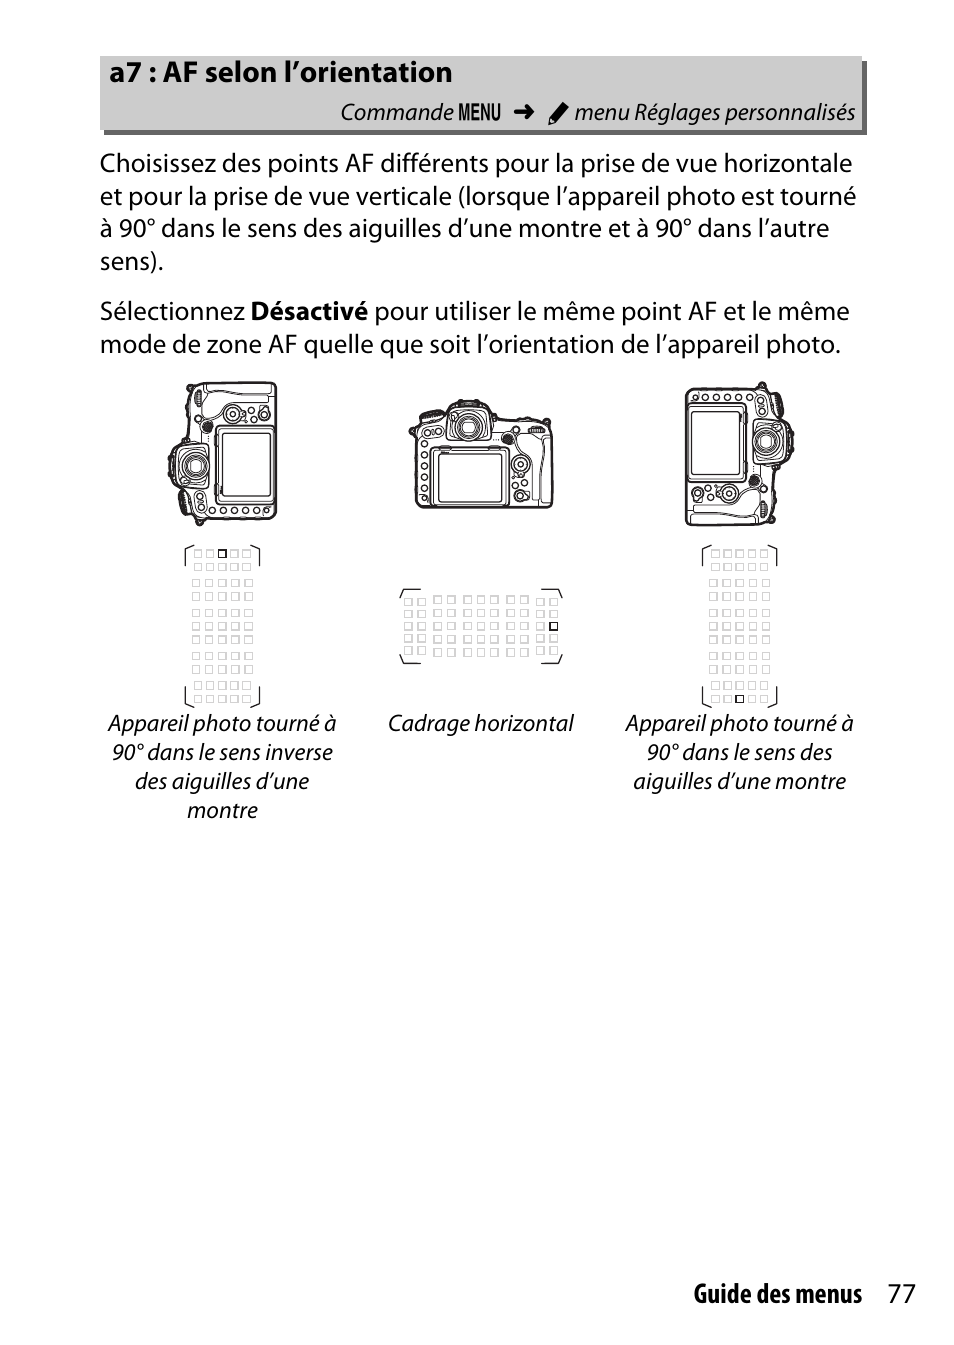 A7 : af selon l’orientation, 77 guide des menus | Nikon D500 Manuel d'utilisation | Page 77 / 207